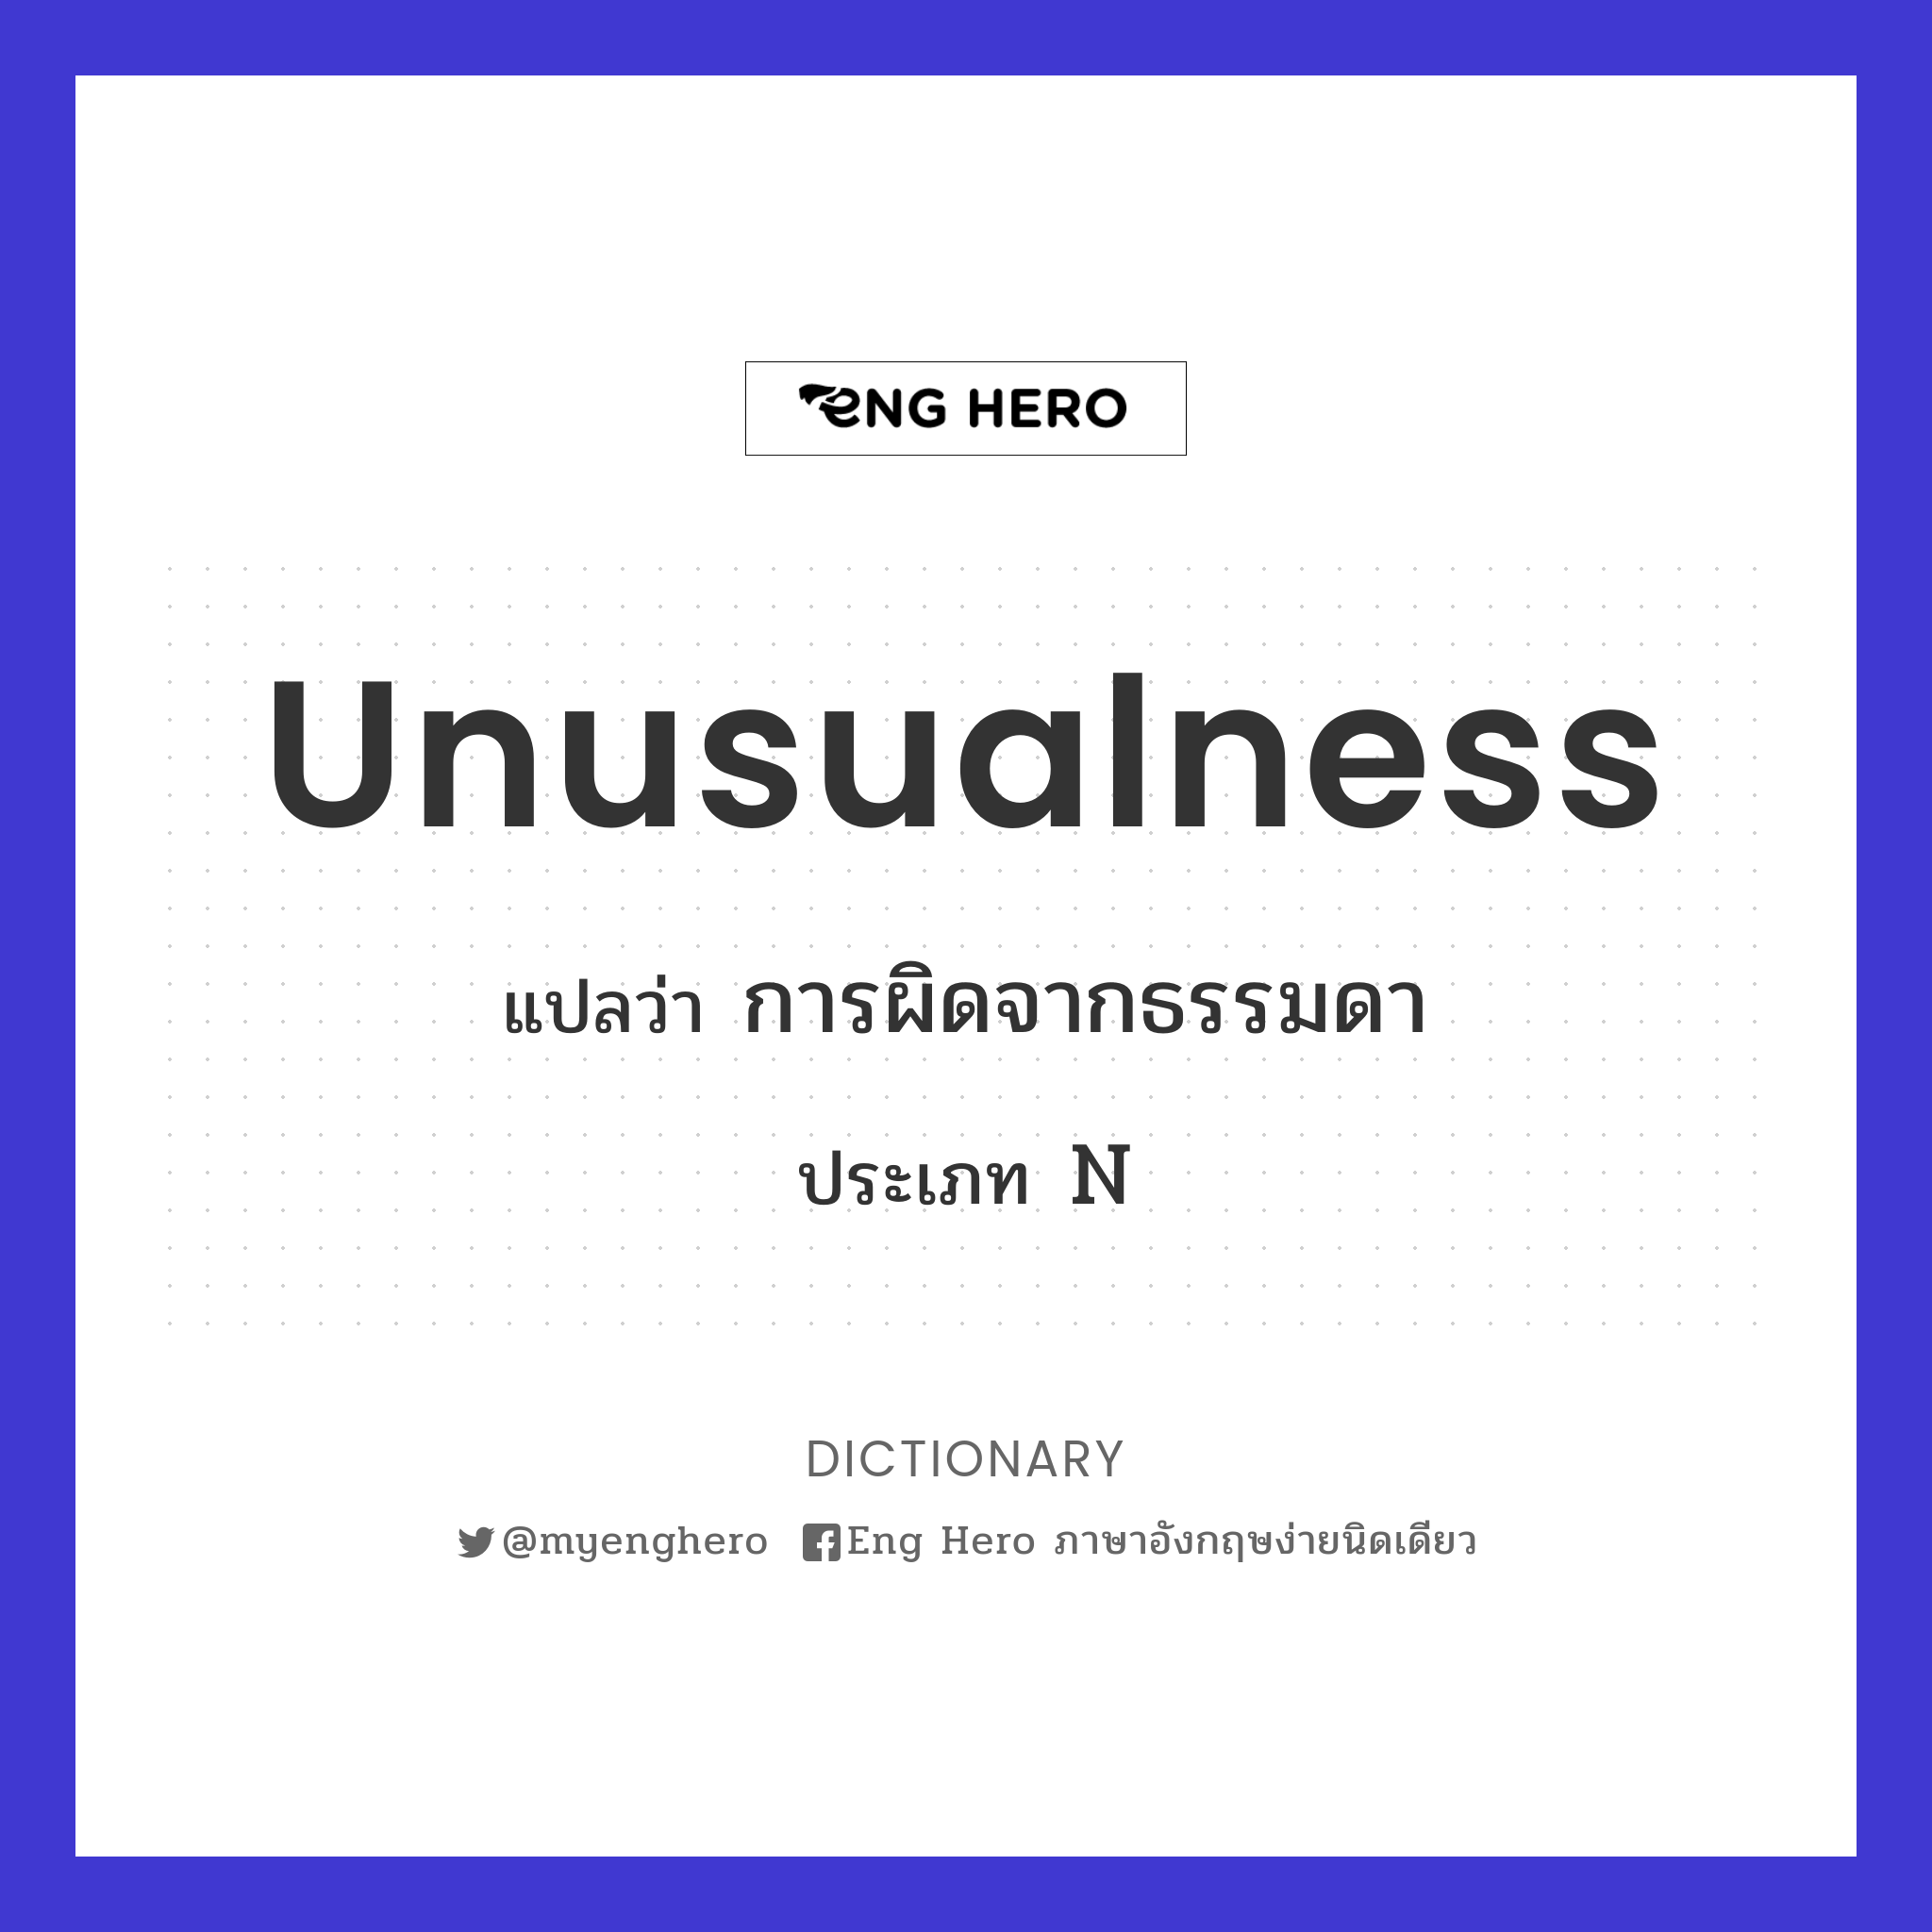 unusualness